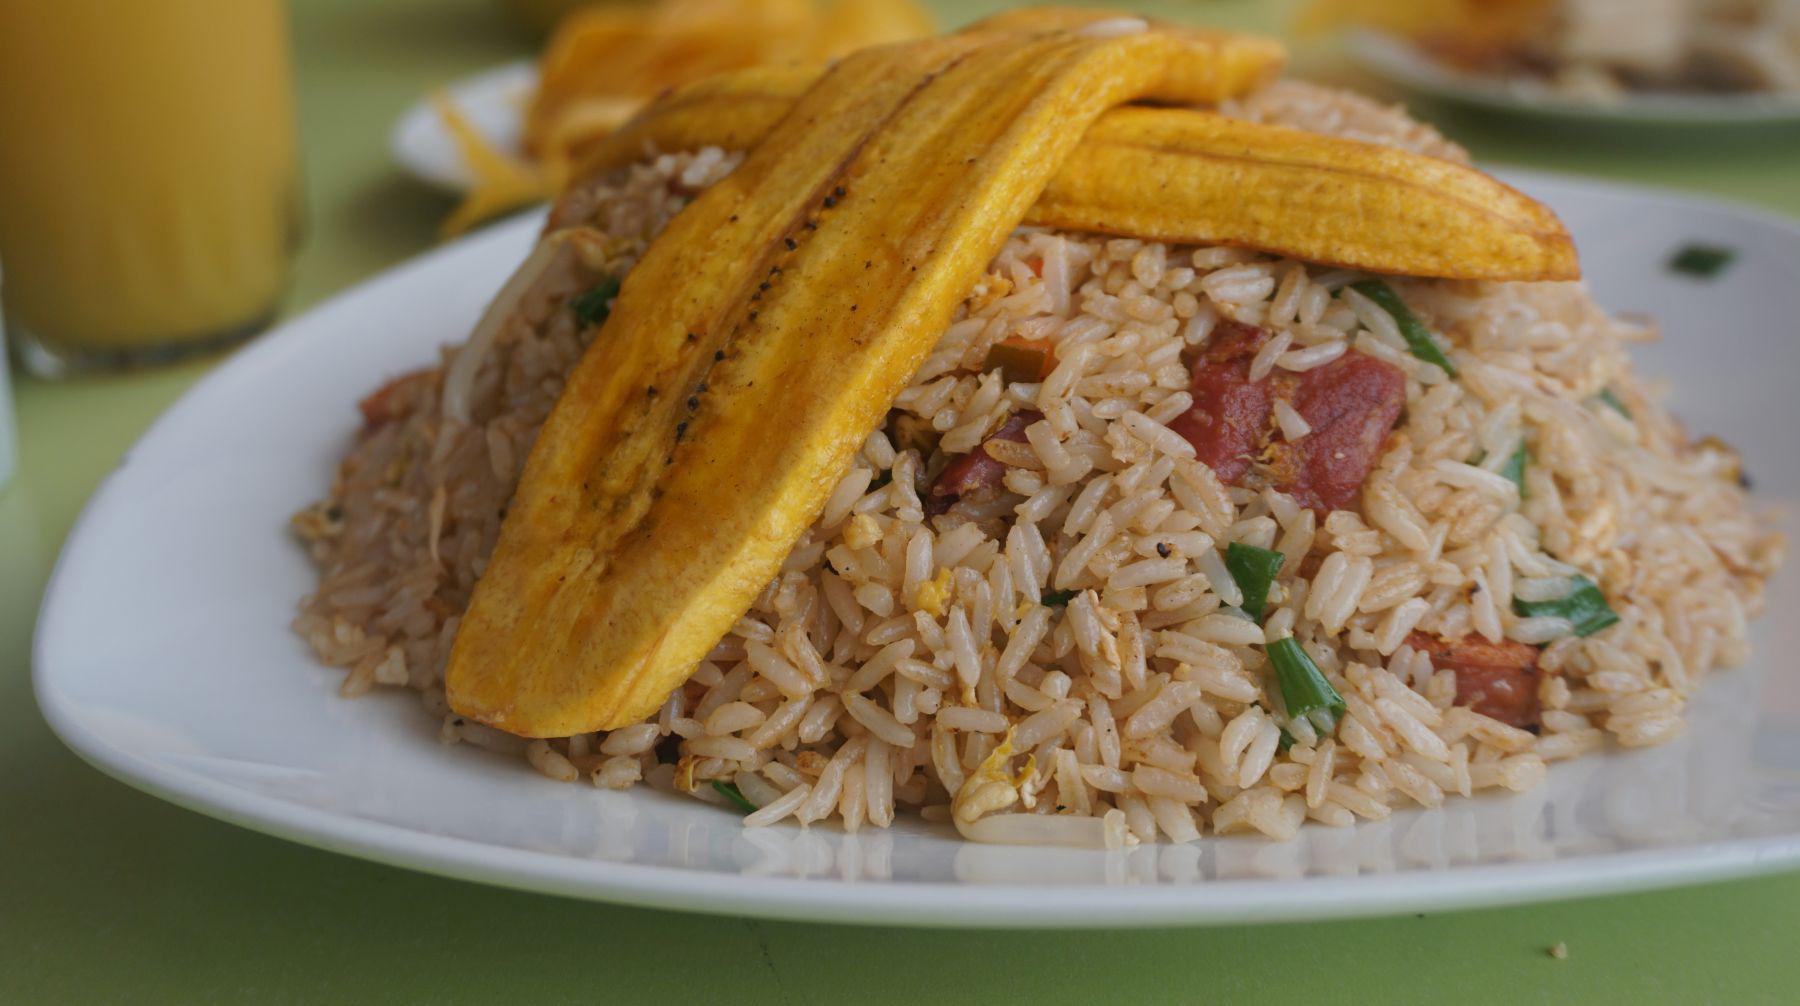 “En el arroz chaufa con cecina se lucen sazón y ejecución”.